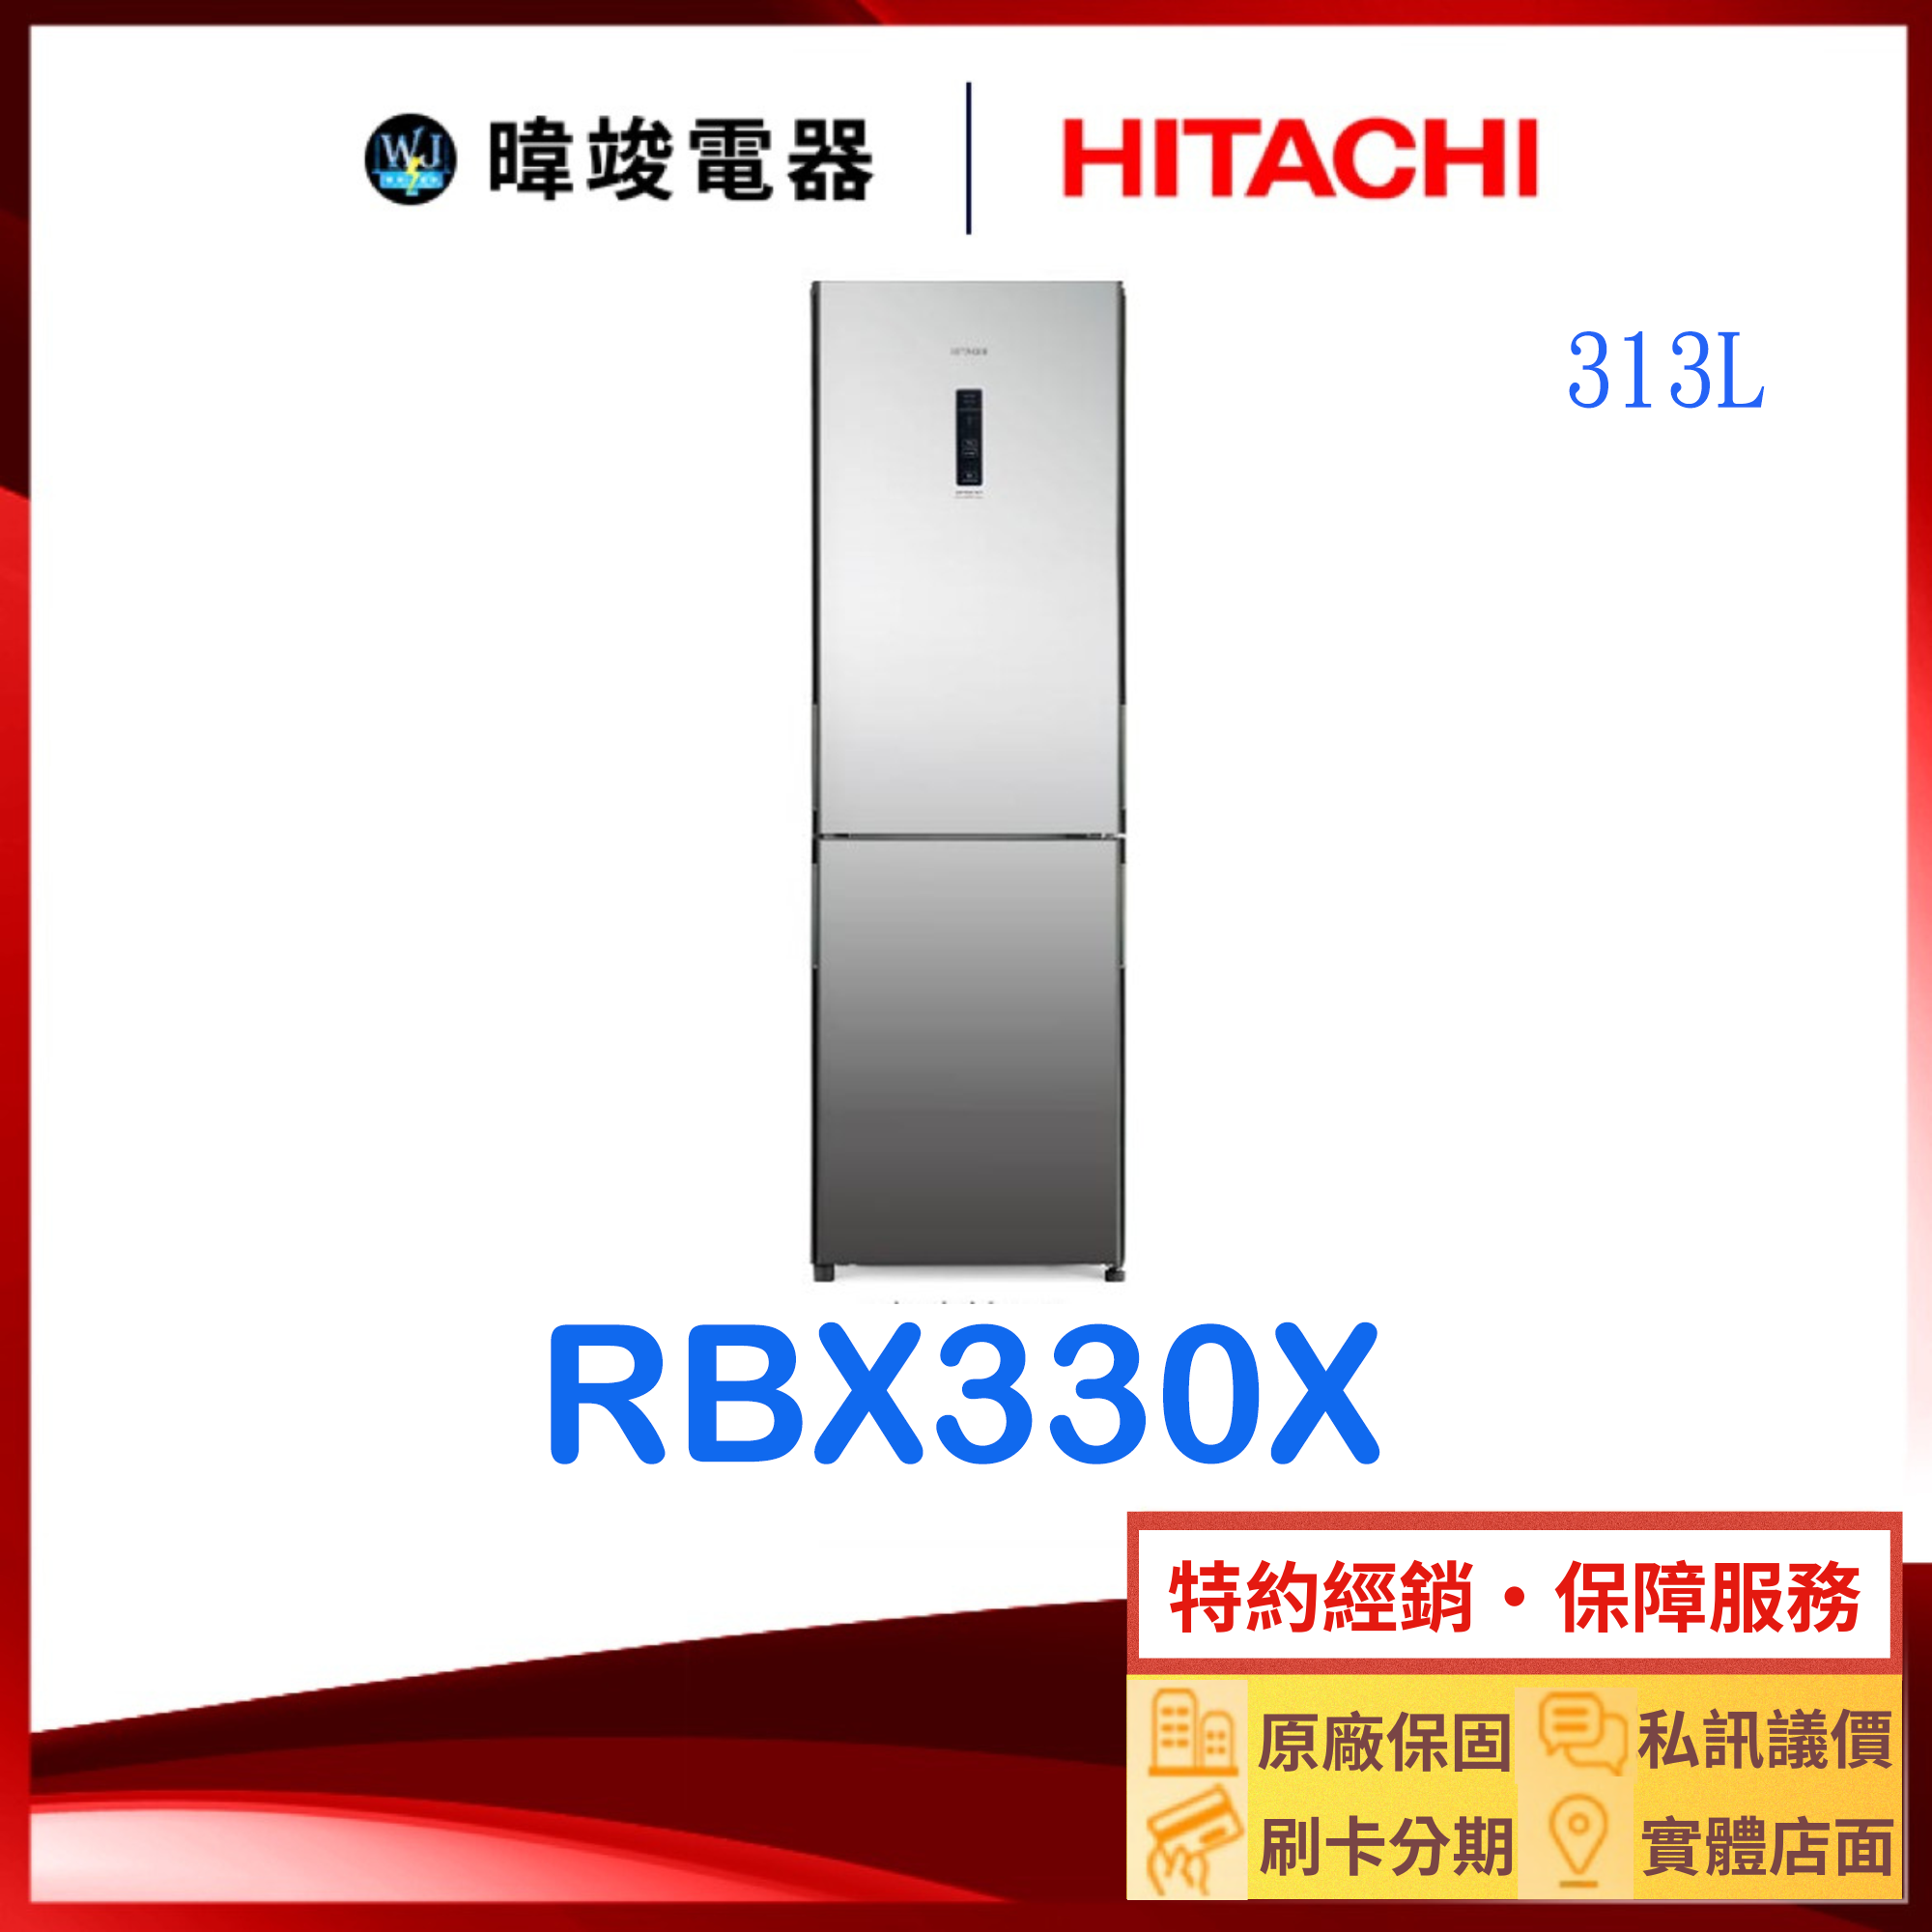 【獨家折扣碼】HITACHI日立 RBX330-X 雙門冰箱 琉璃鏡 右開 冰箱 RBX330X 日立冰箱